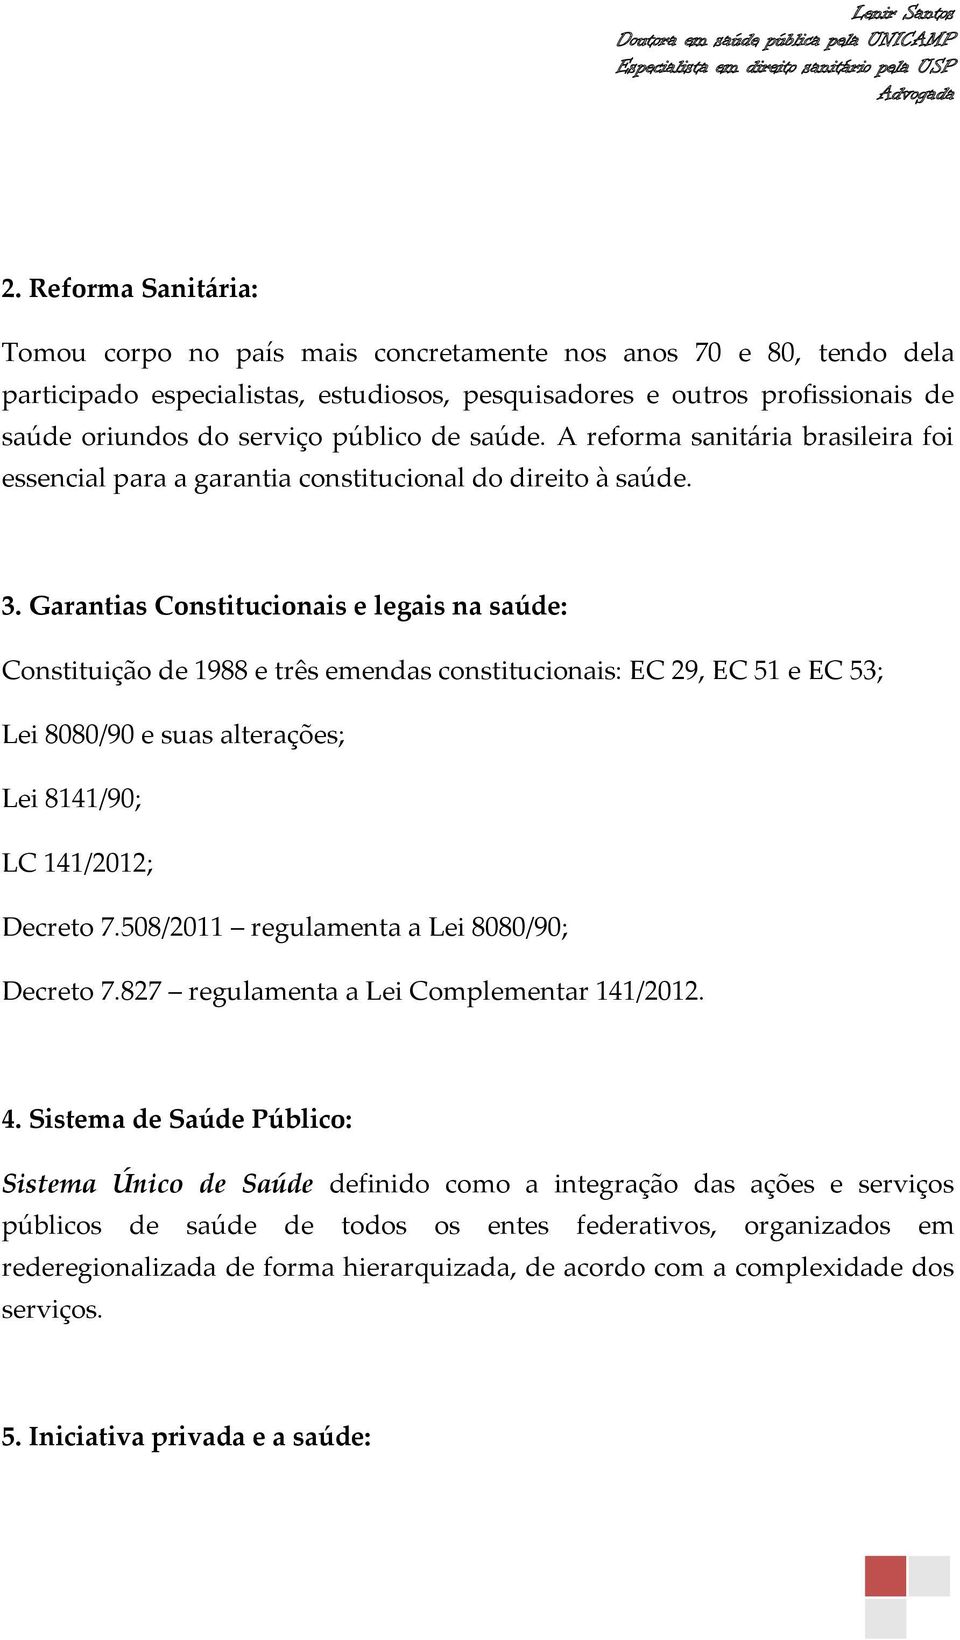 Garantias Constitucionais e legais na saúde: Constituição de 1988 e três emendas constitucionais: EC 29, EC 51 e EC 53; Lei 8080/90 e suas alterações; Lei 8141/90; LC 141/2012; Decreto 7.